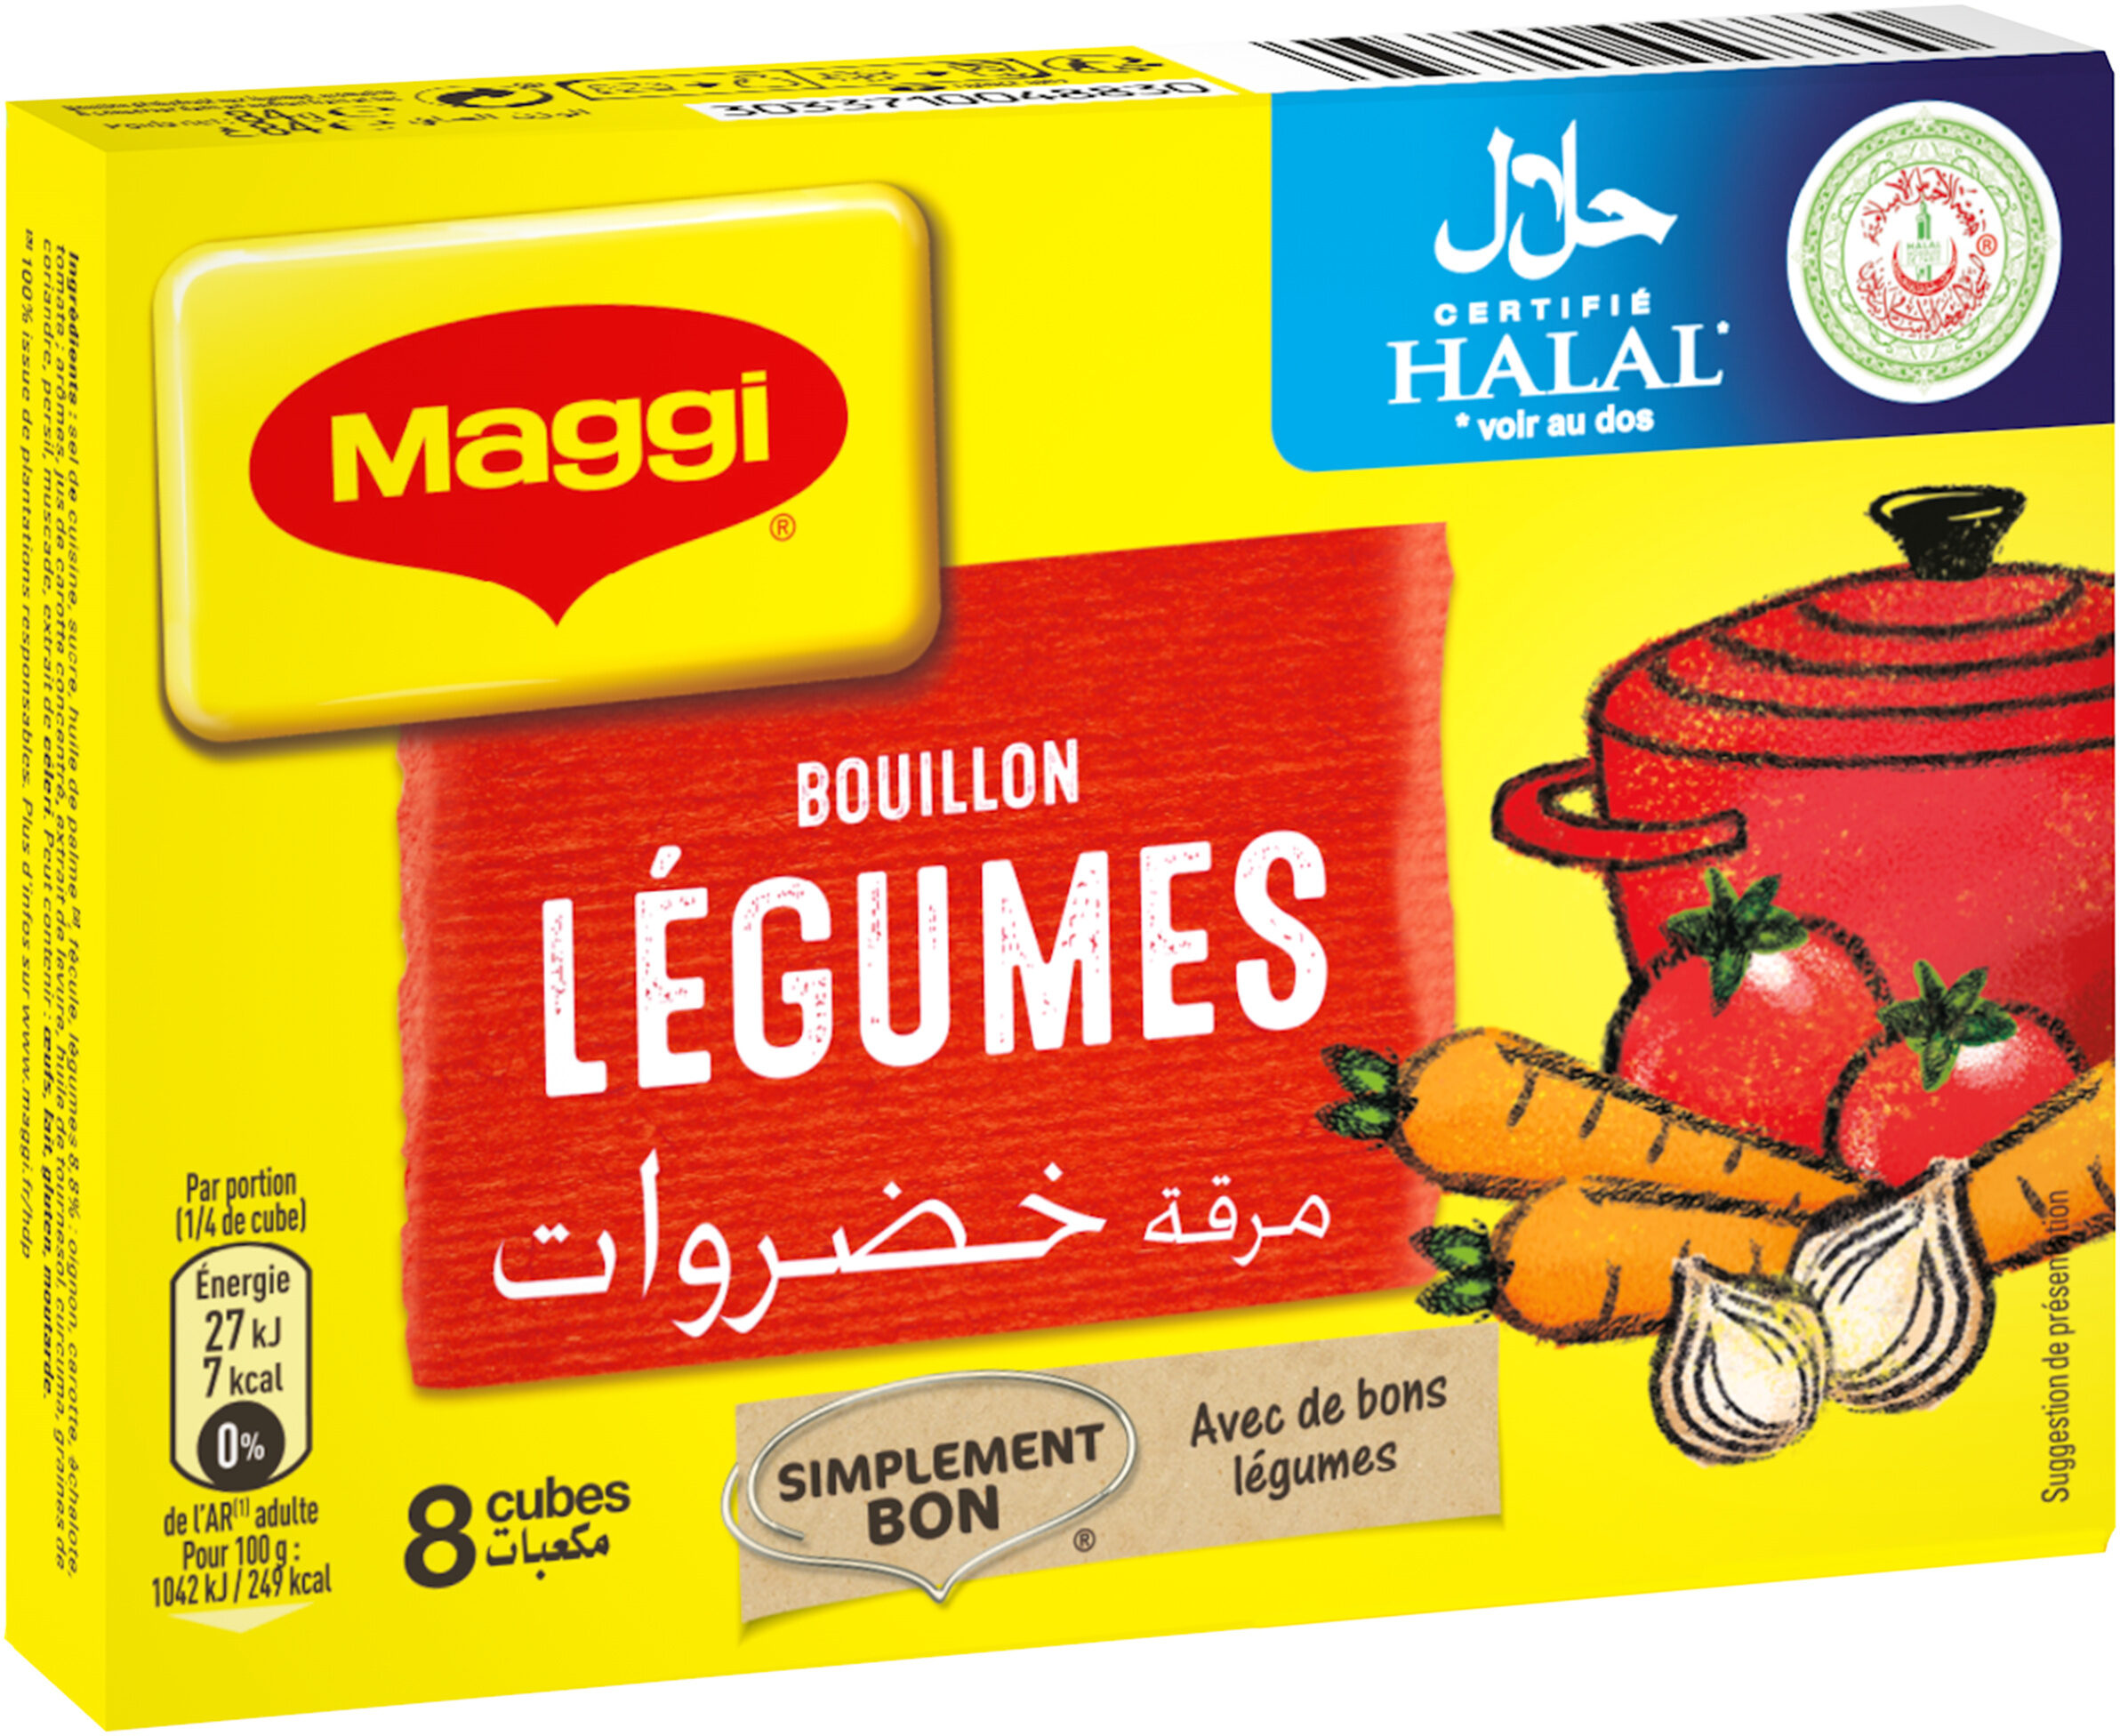 MAGGI Bouillon de Légumes Halal 8 tablettes, 84g - Product - fr